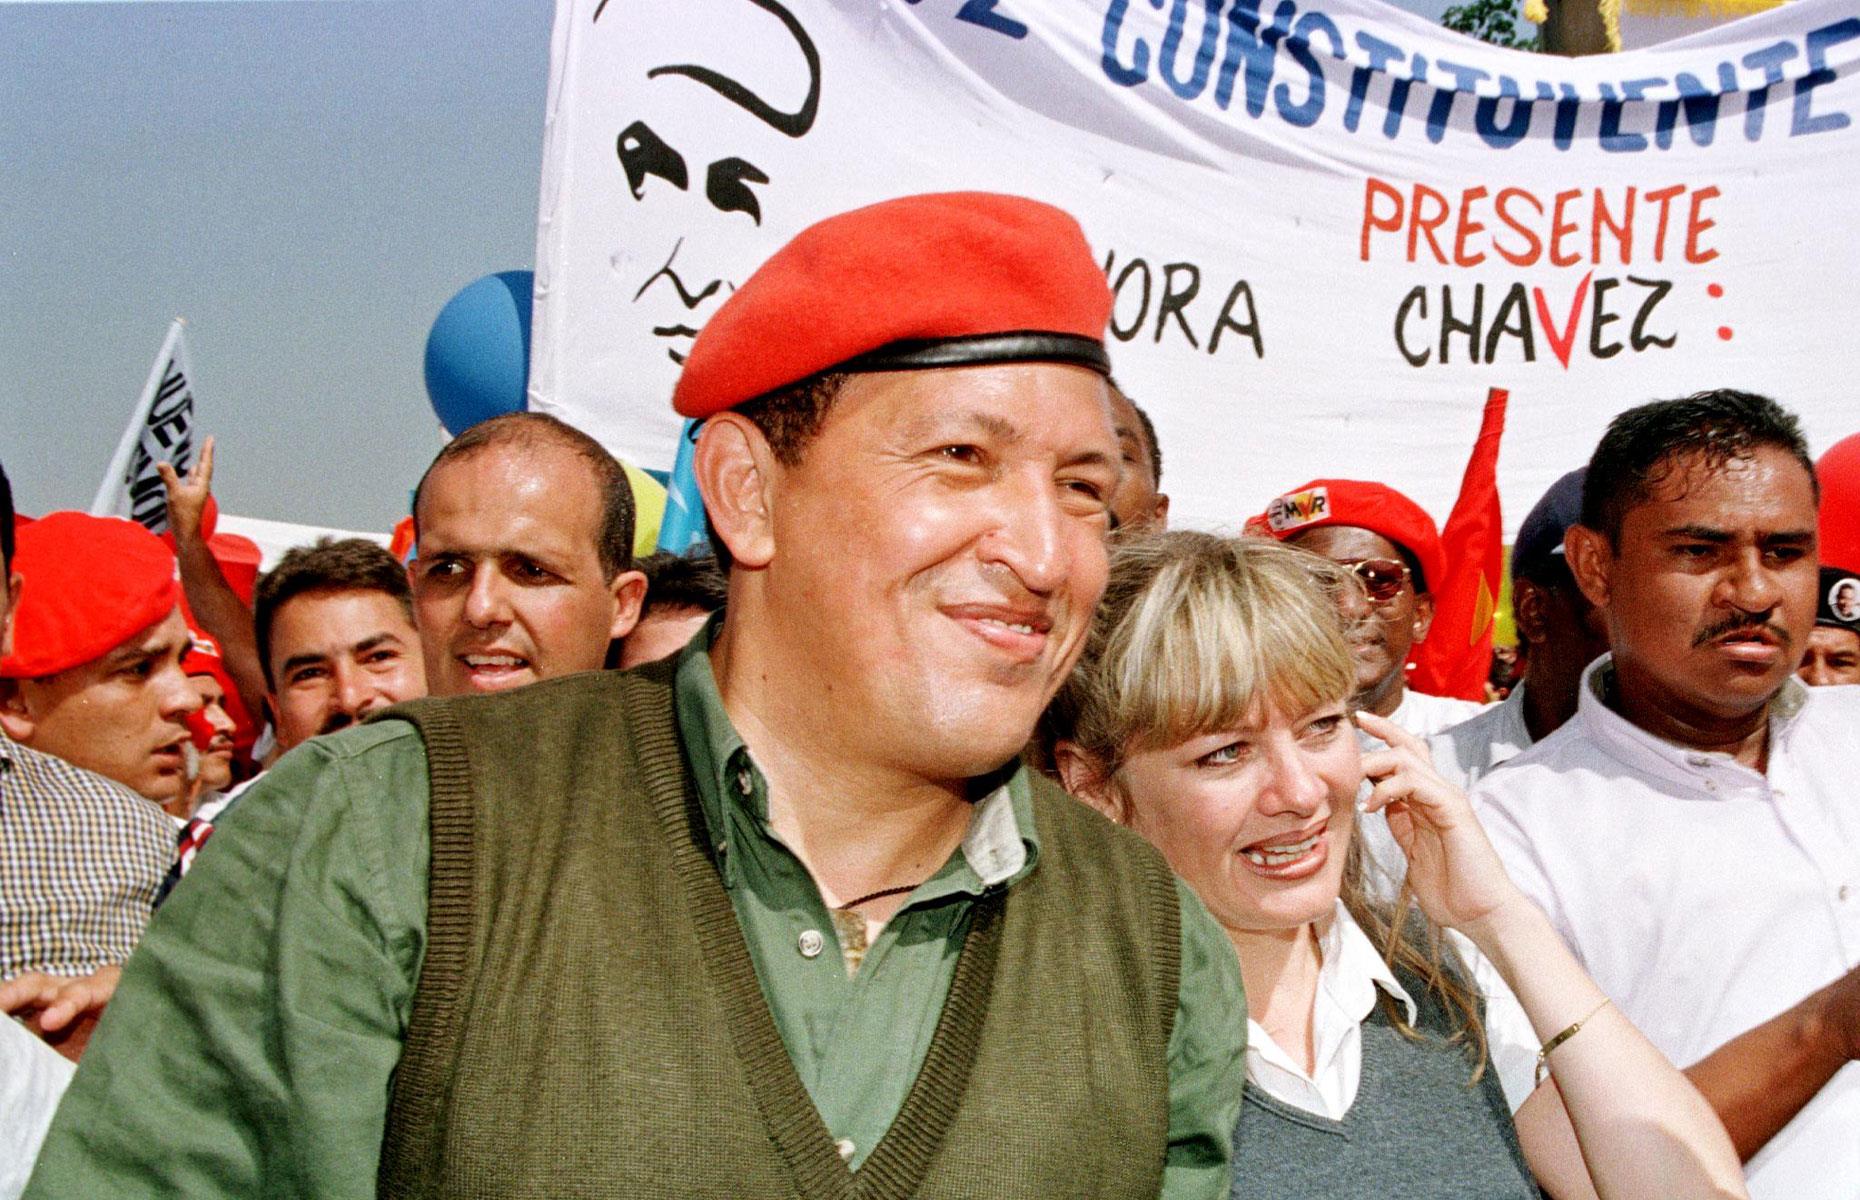 Rise of Chávez